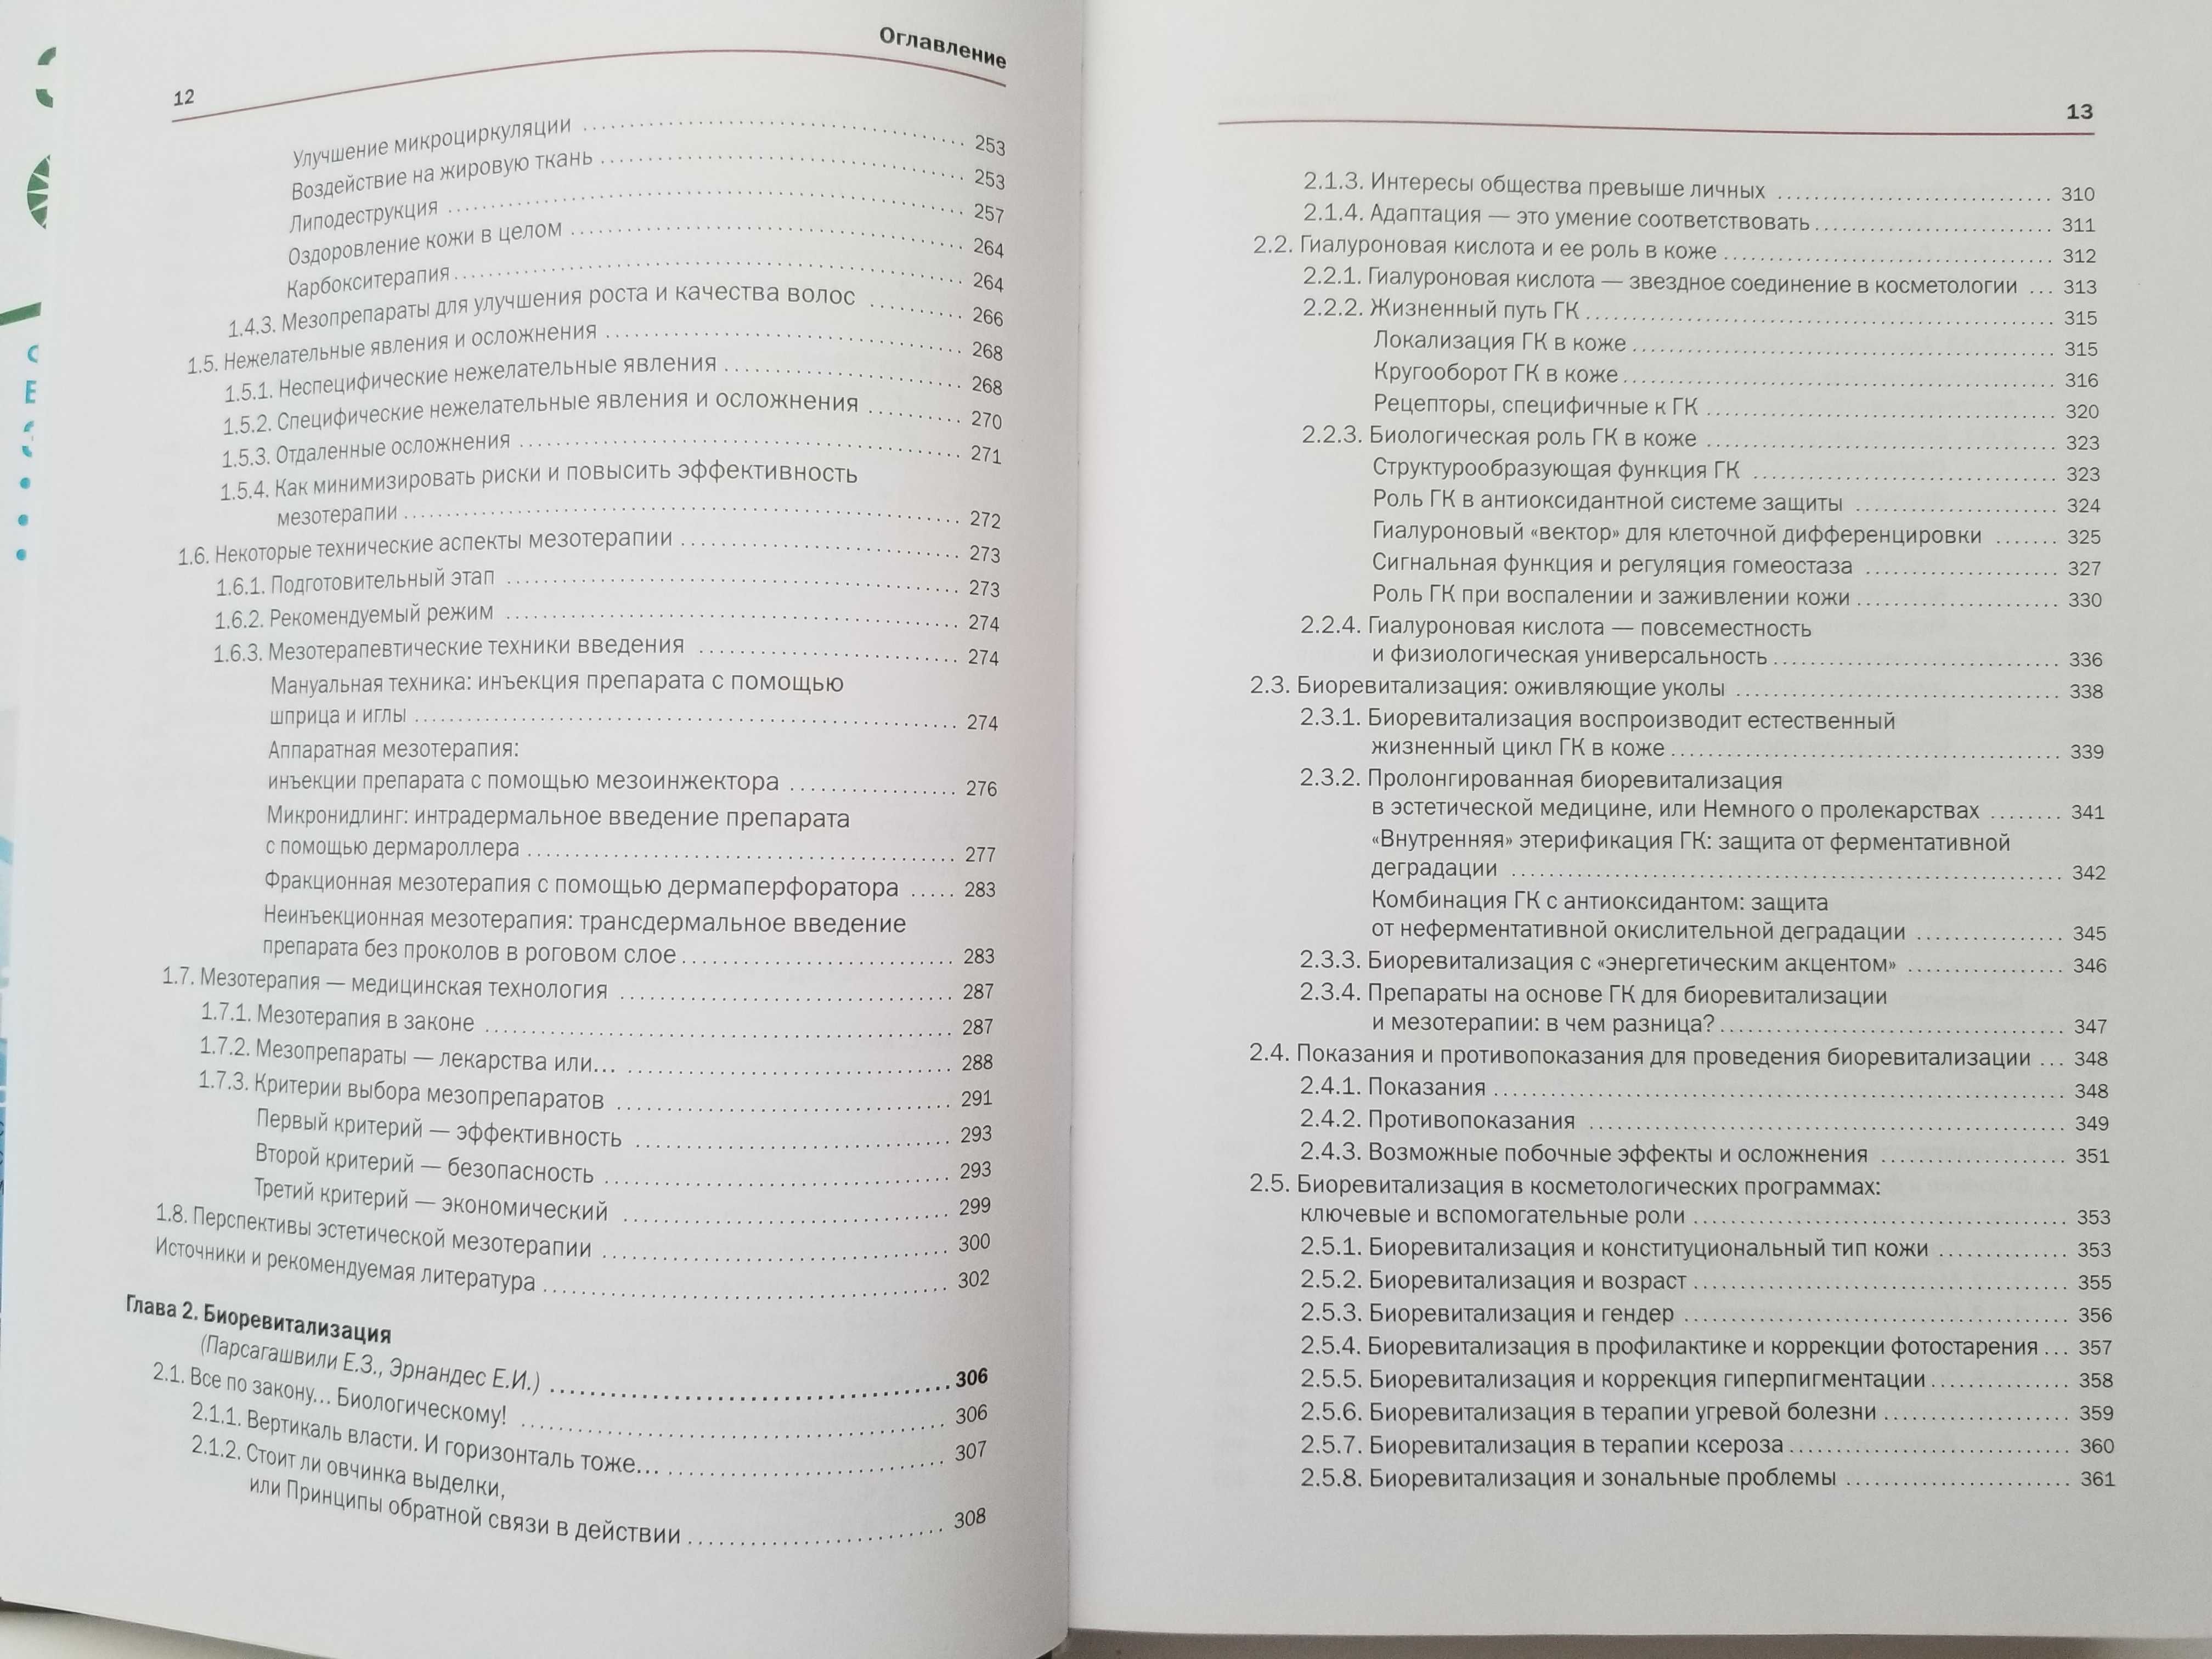 Новая косметология. Инъекционные методы в косметологии. 2-е изд.